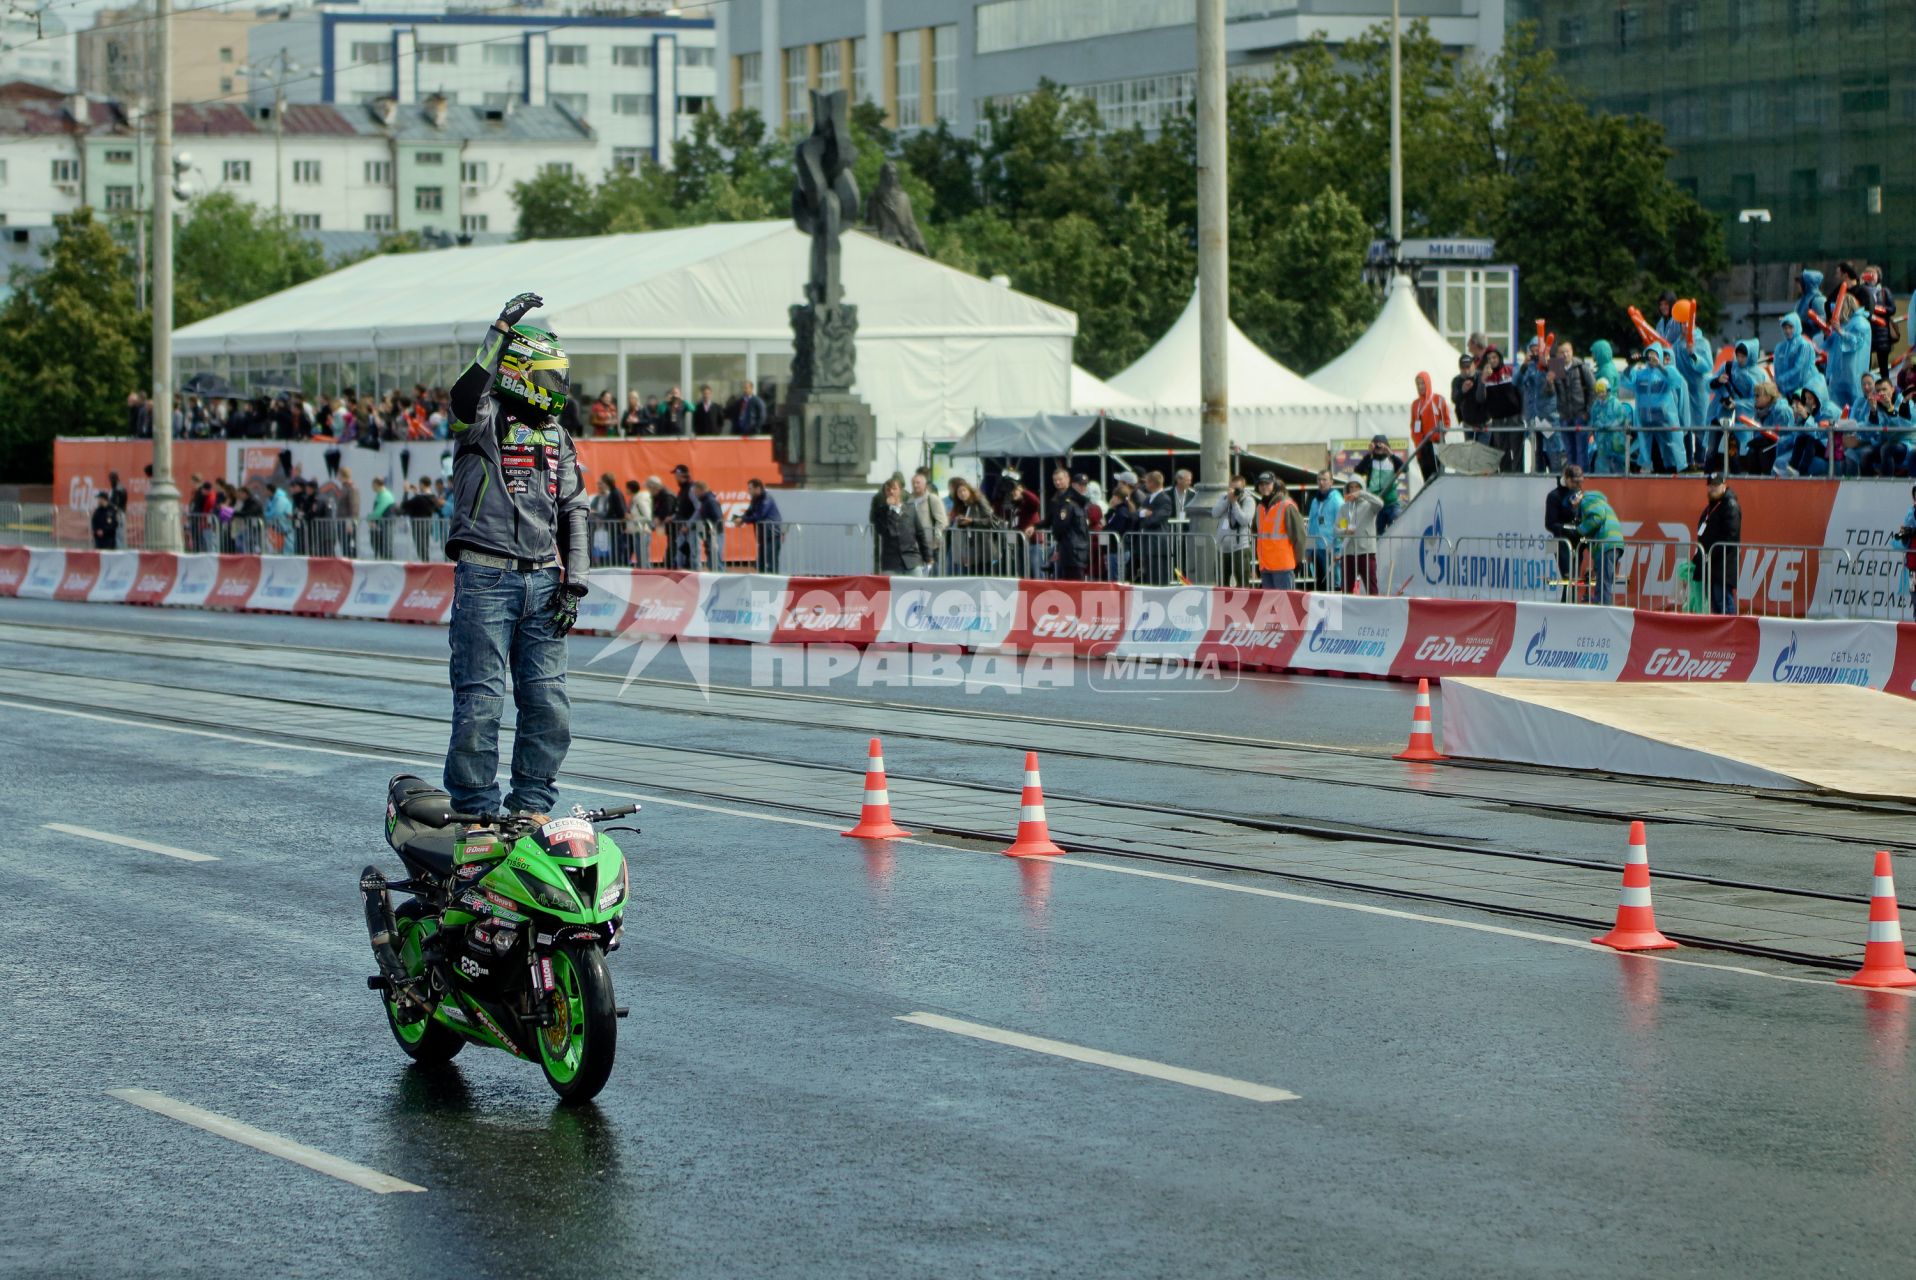 Мотоциклист выполняет трюк, едет стоя на мотоцикле на автошоу в Екатеринбурге